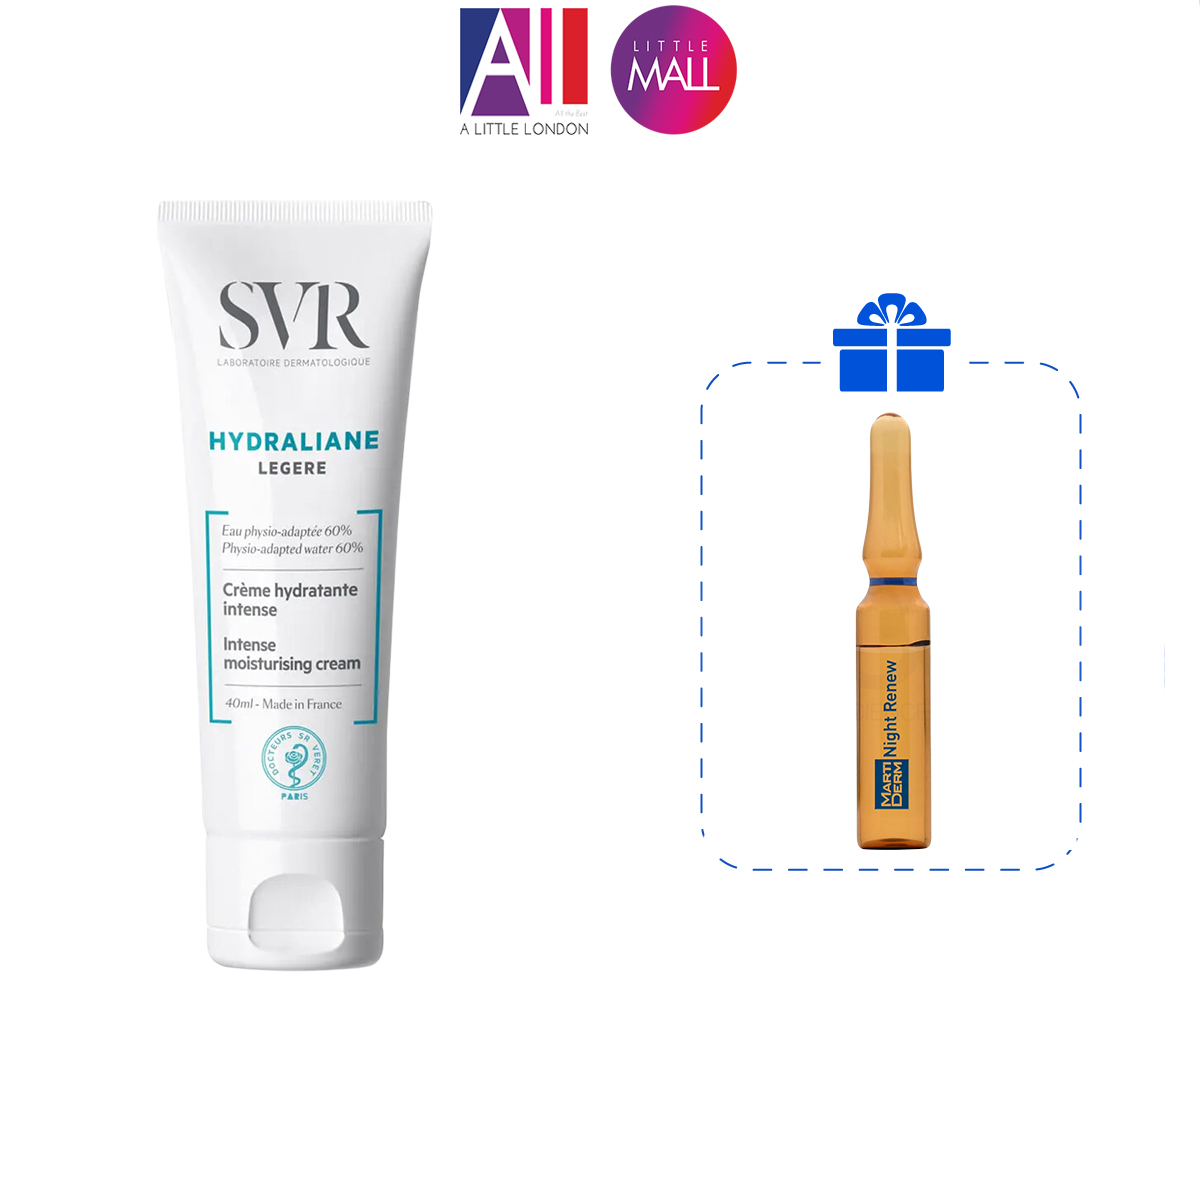 Kem dưỡng ẩm cho da thường và da hỗn hợp SVR hydraliane legere 40ml TẶNG Ampoule chống lão hóa Martiderm (Nhập khẩu)